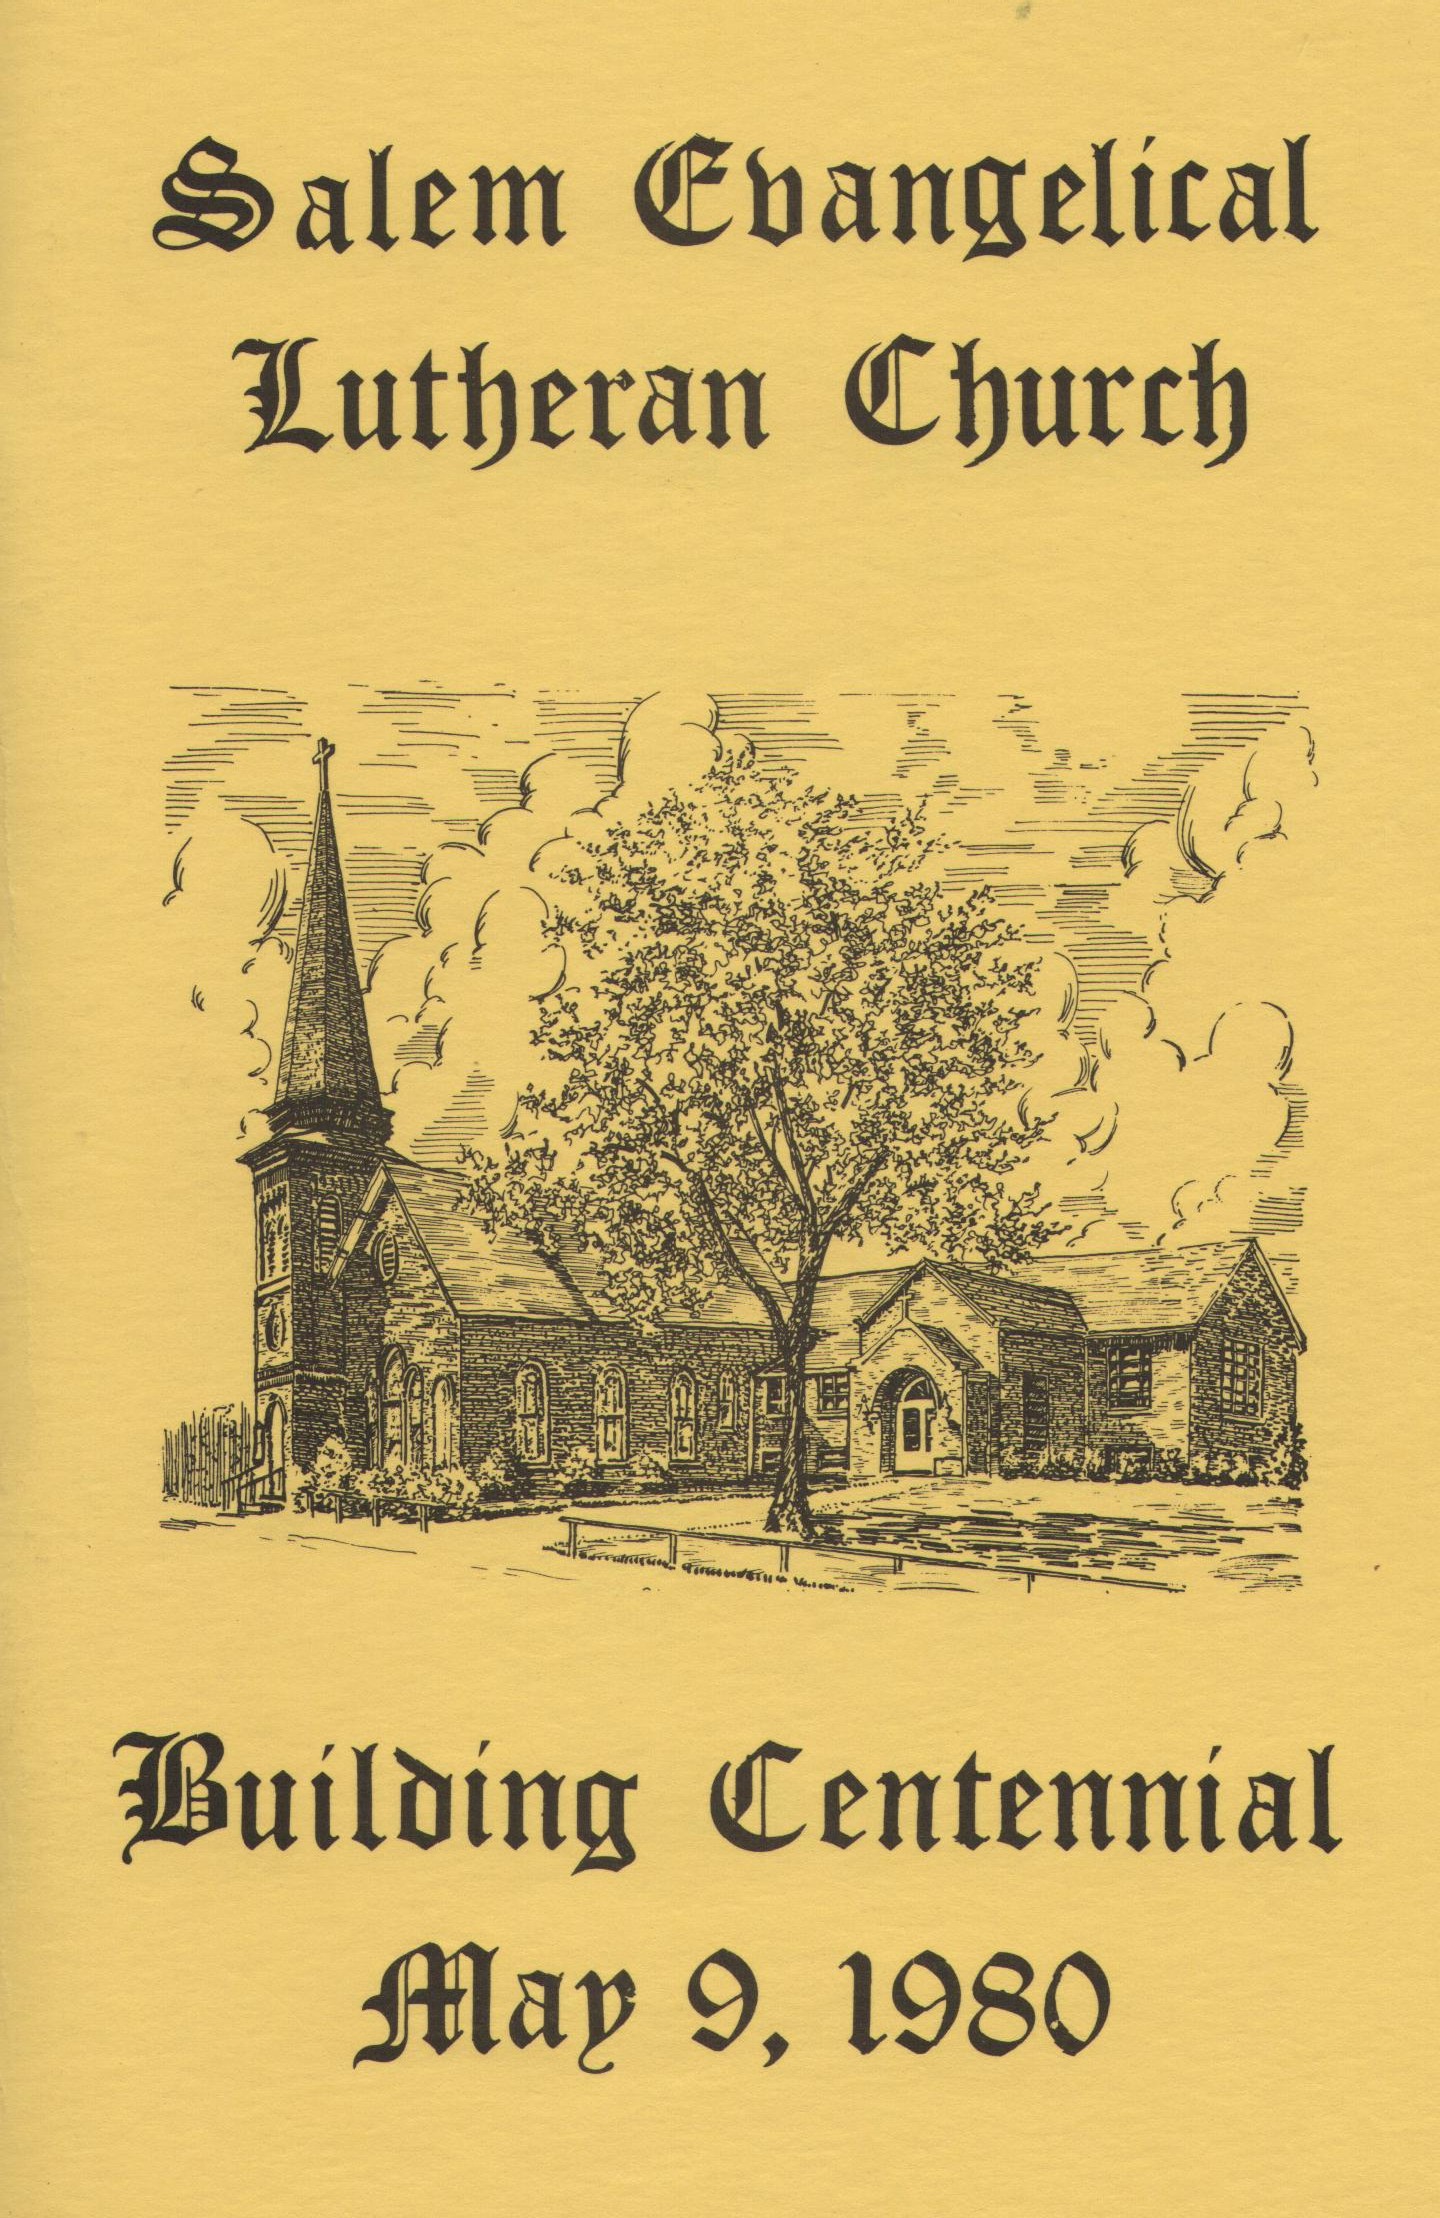 1980 Building Centennial Book Cover